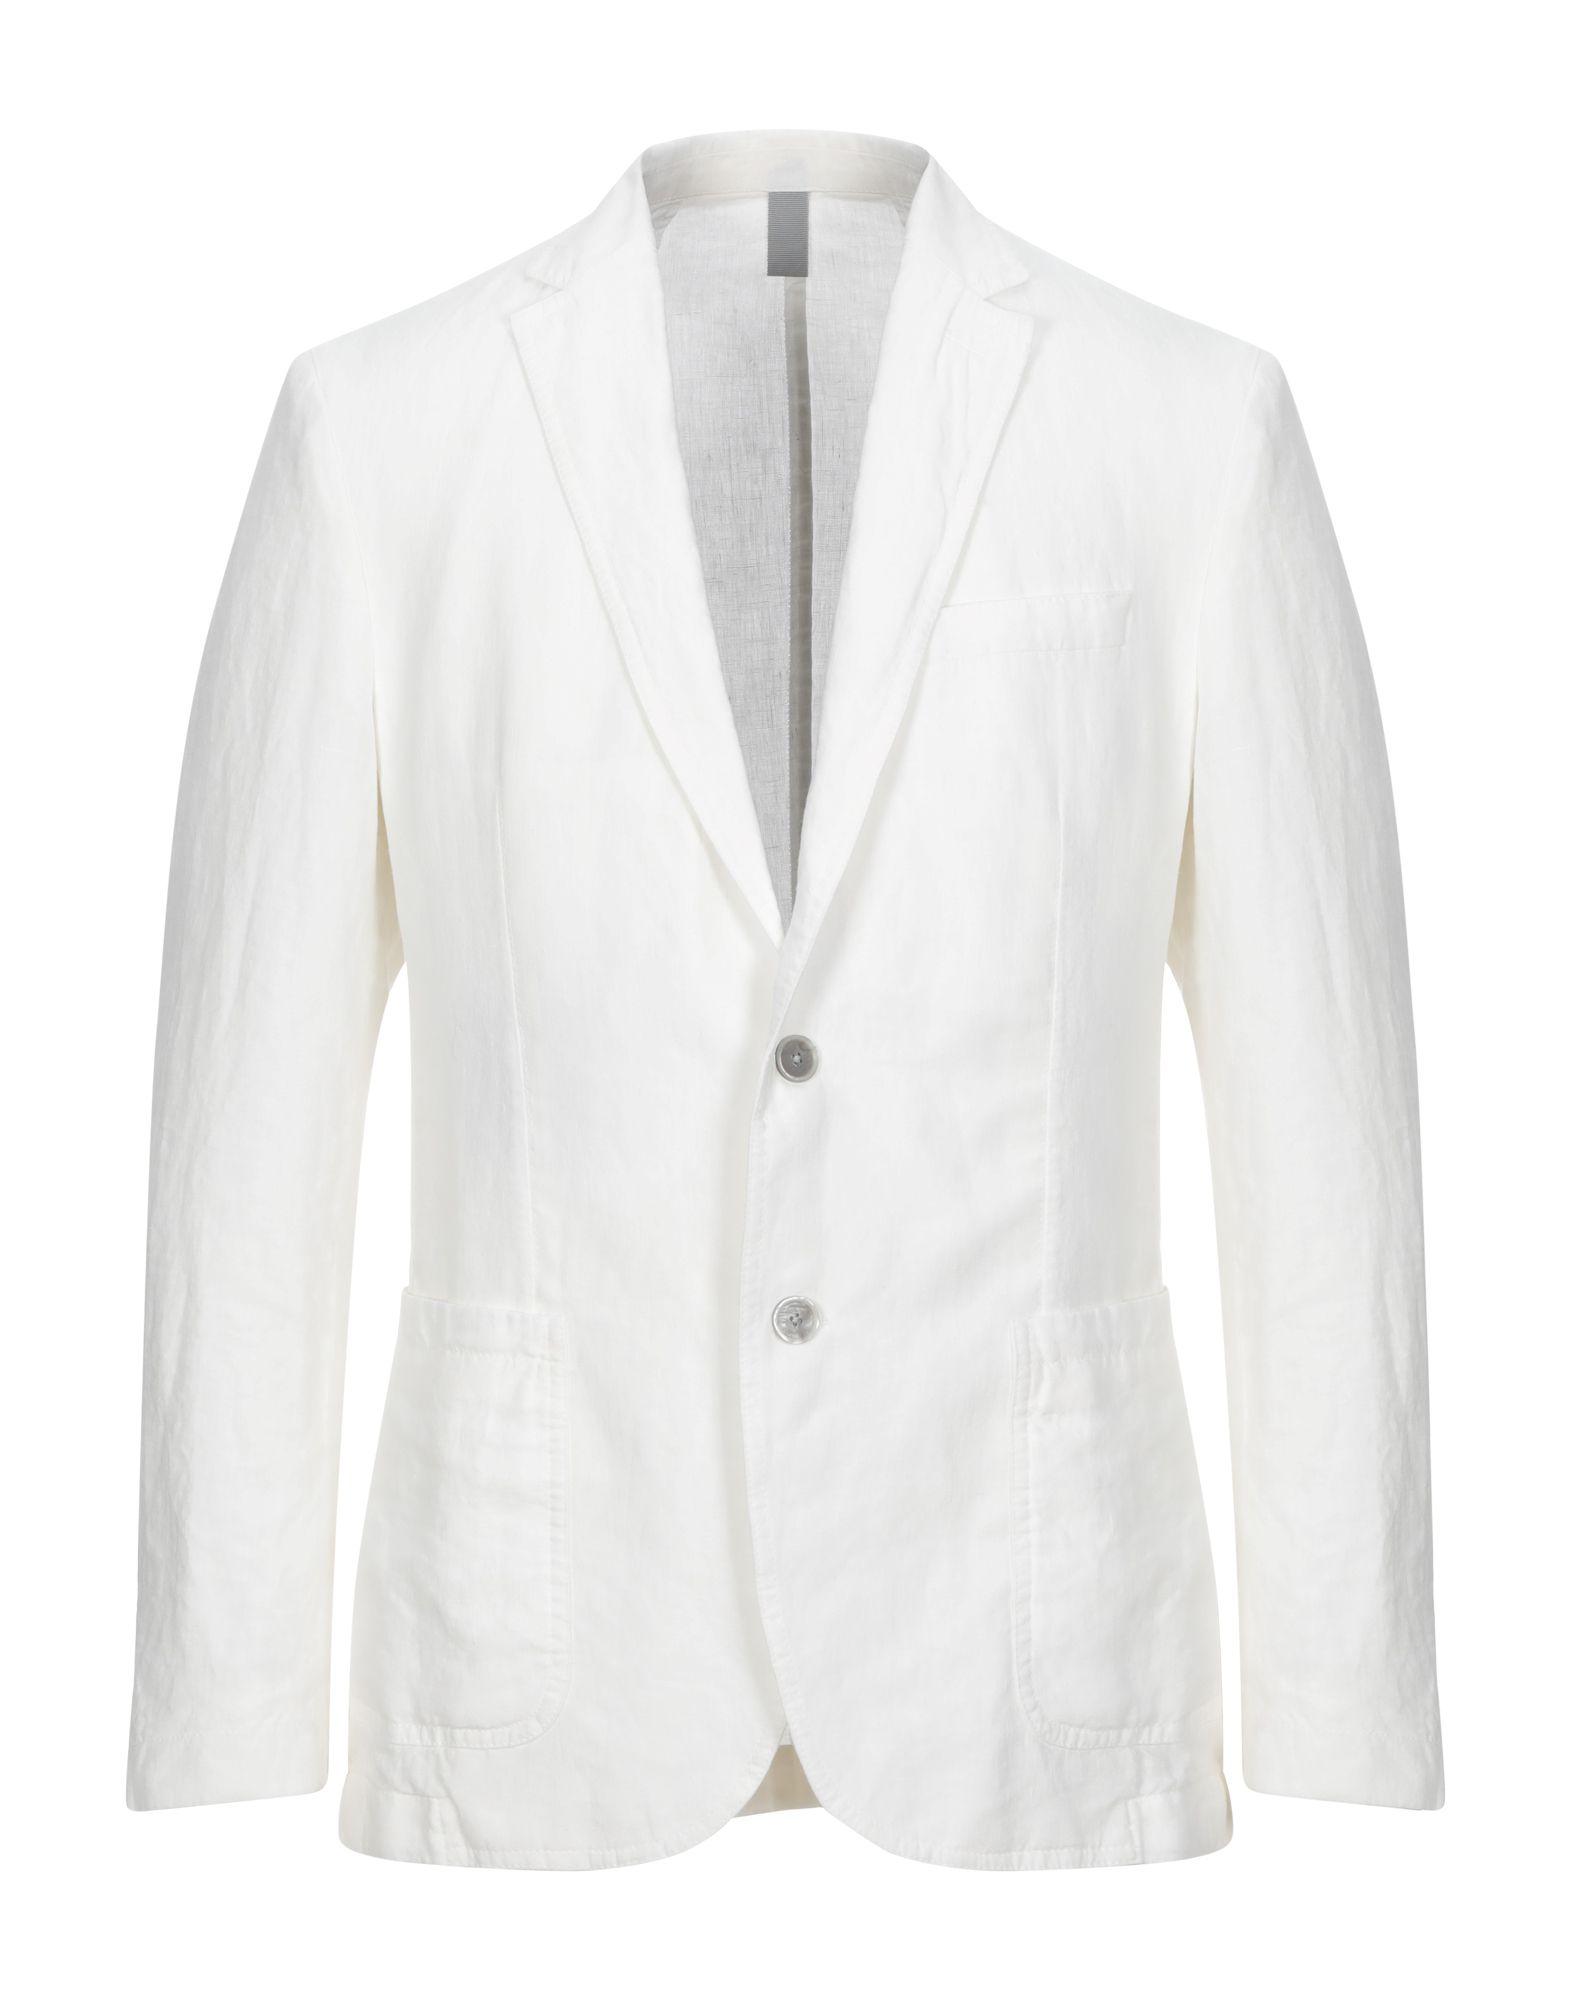 BOSS by Hugo Boss Linen Suit Jacket in White for Men - Lyst